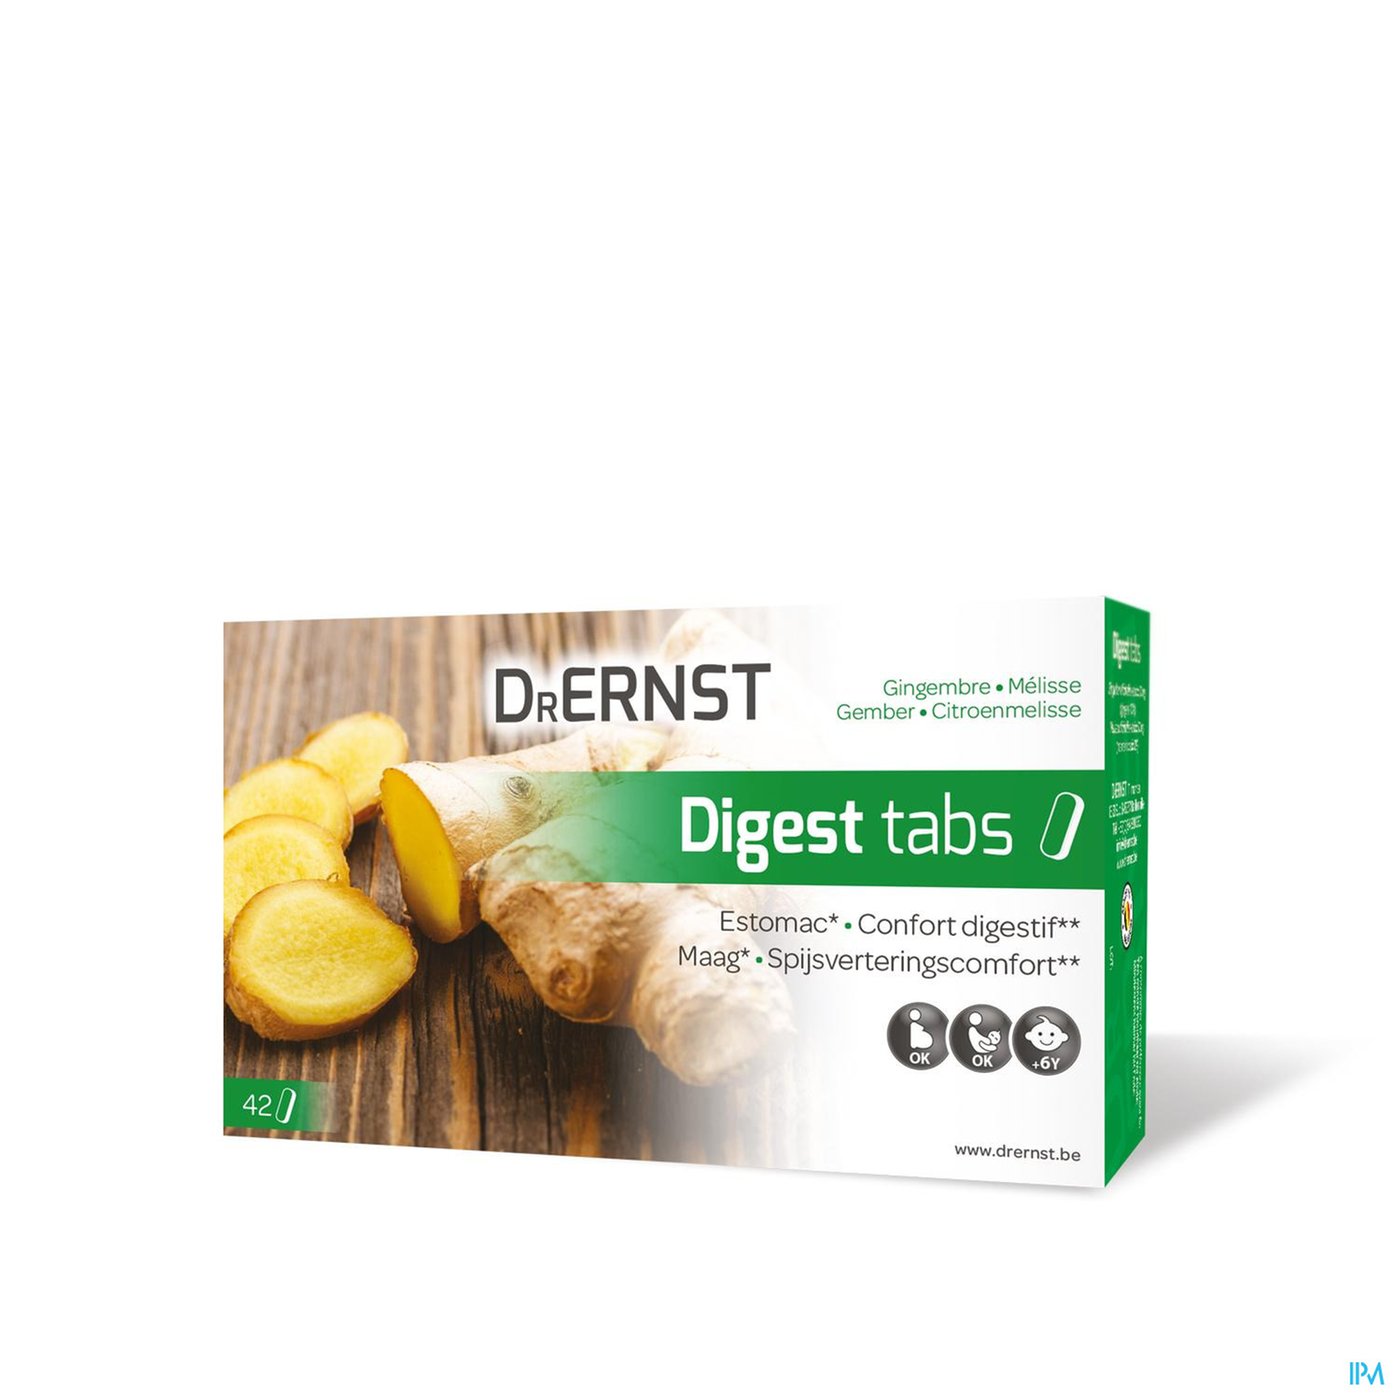 Dr Ernst Digest tabs 42 Tabl packshot